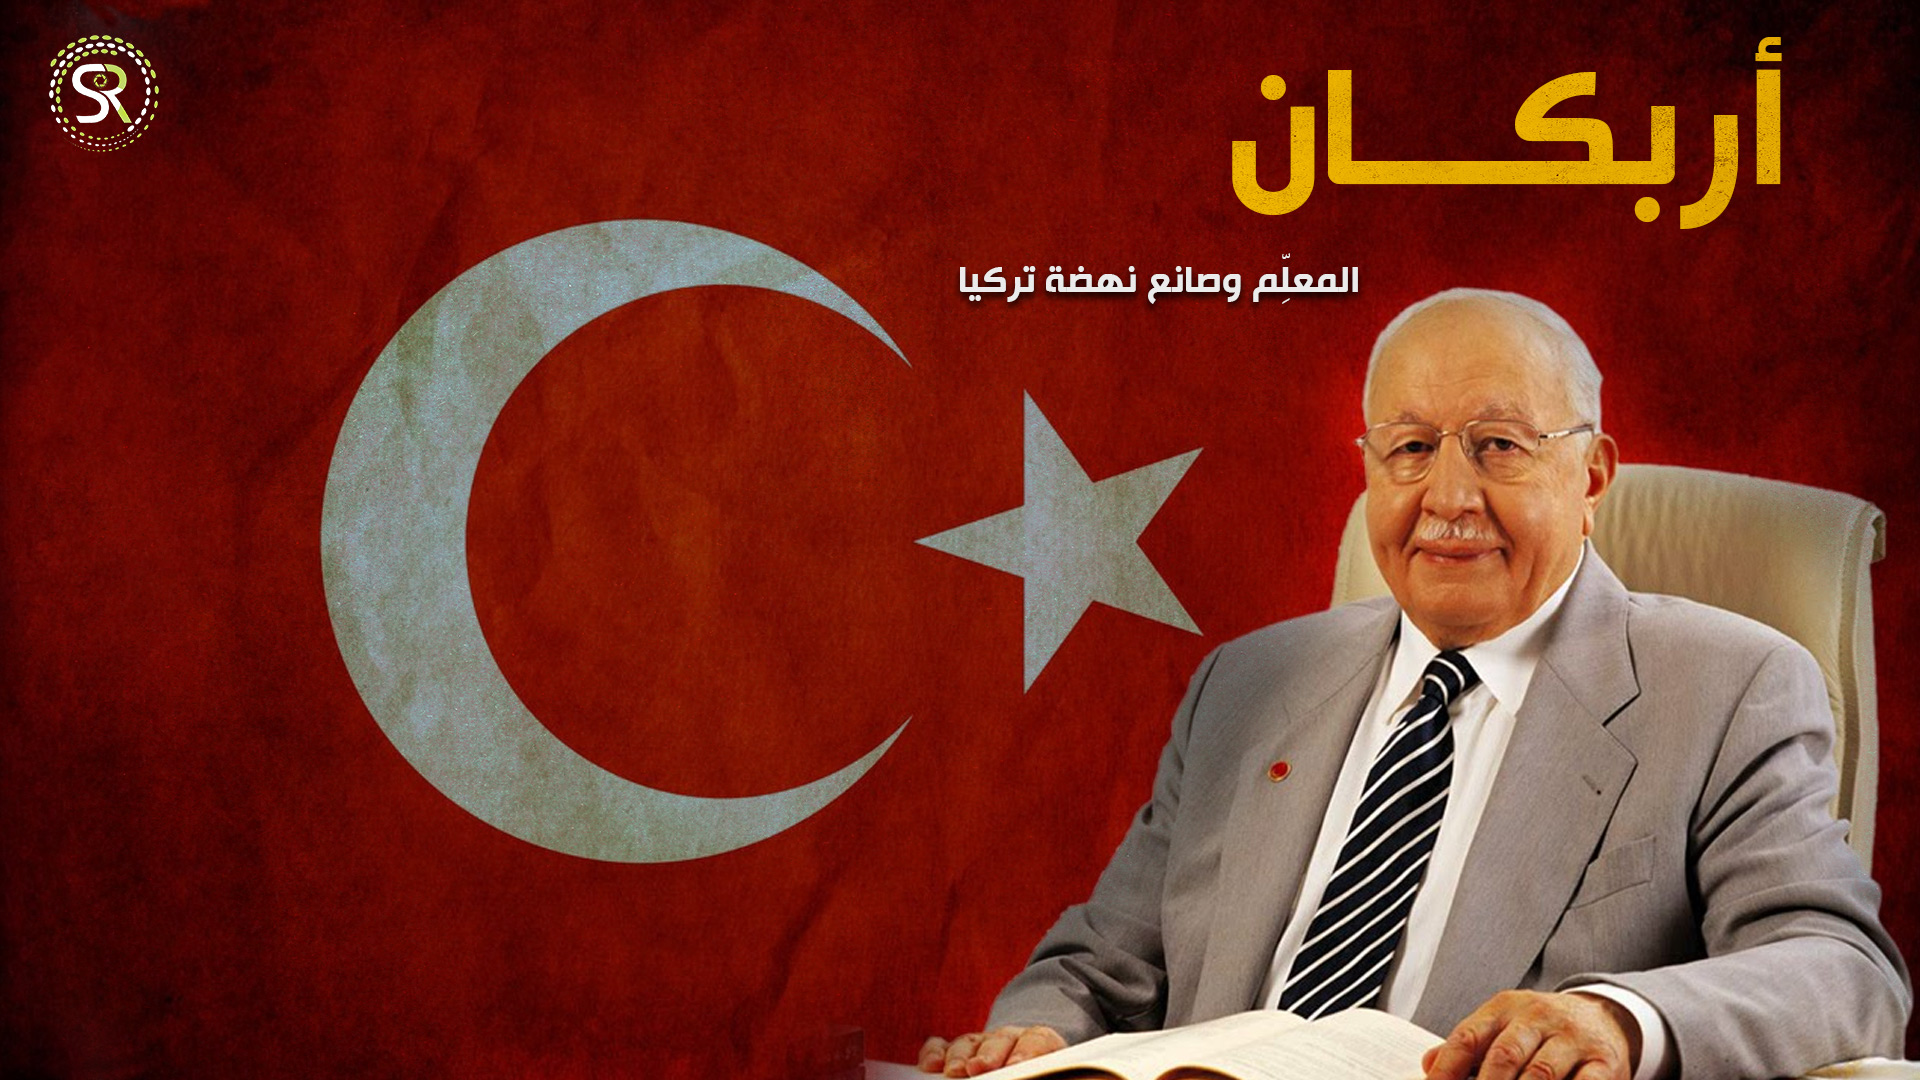 نجم الدين أربكان، المعلِّم وصانع نهضة تركيا، وفارس الإسلام السياسيُّ